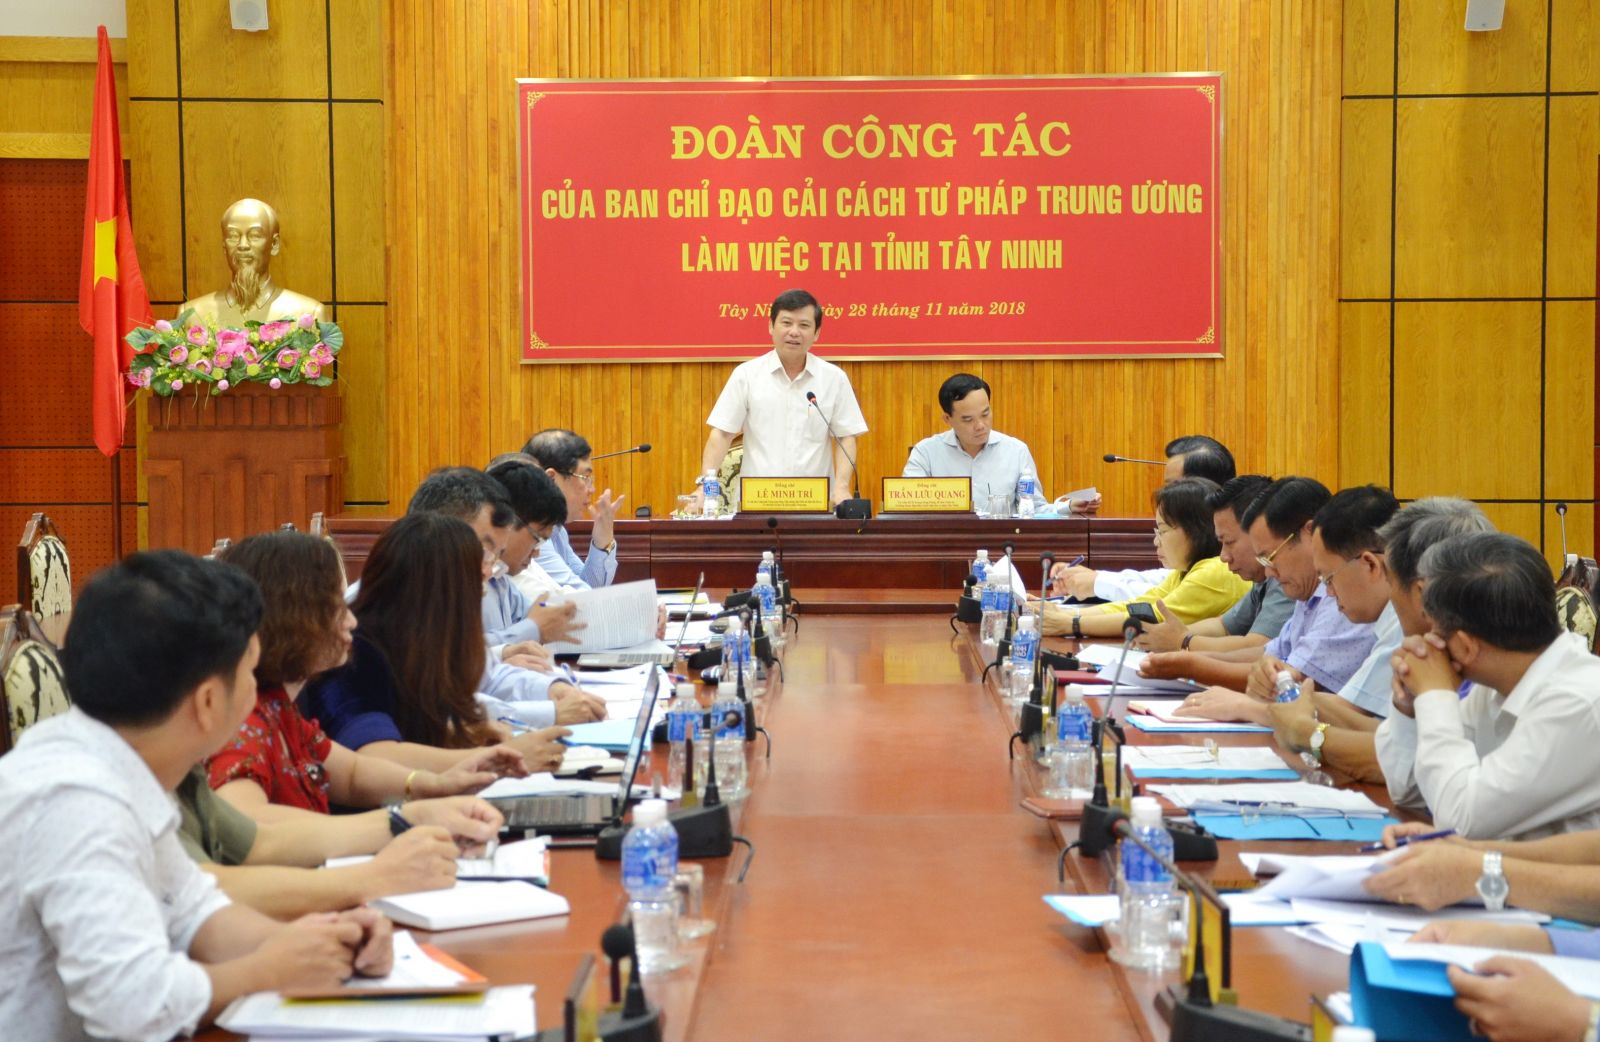 Điểm báo in Tây Ninh ngày 30.11.2018